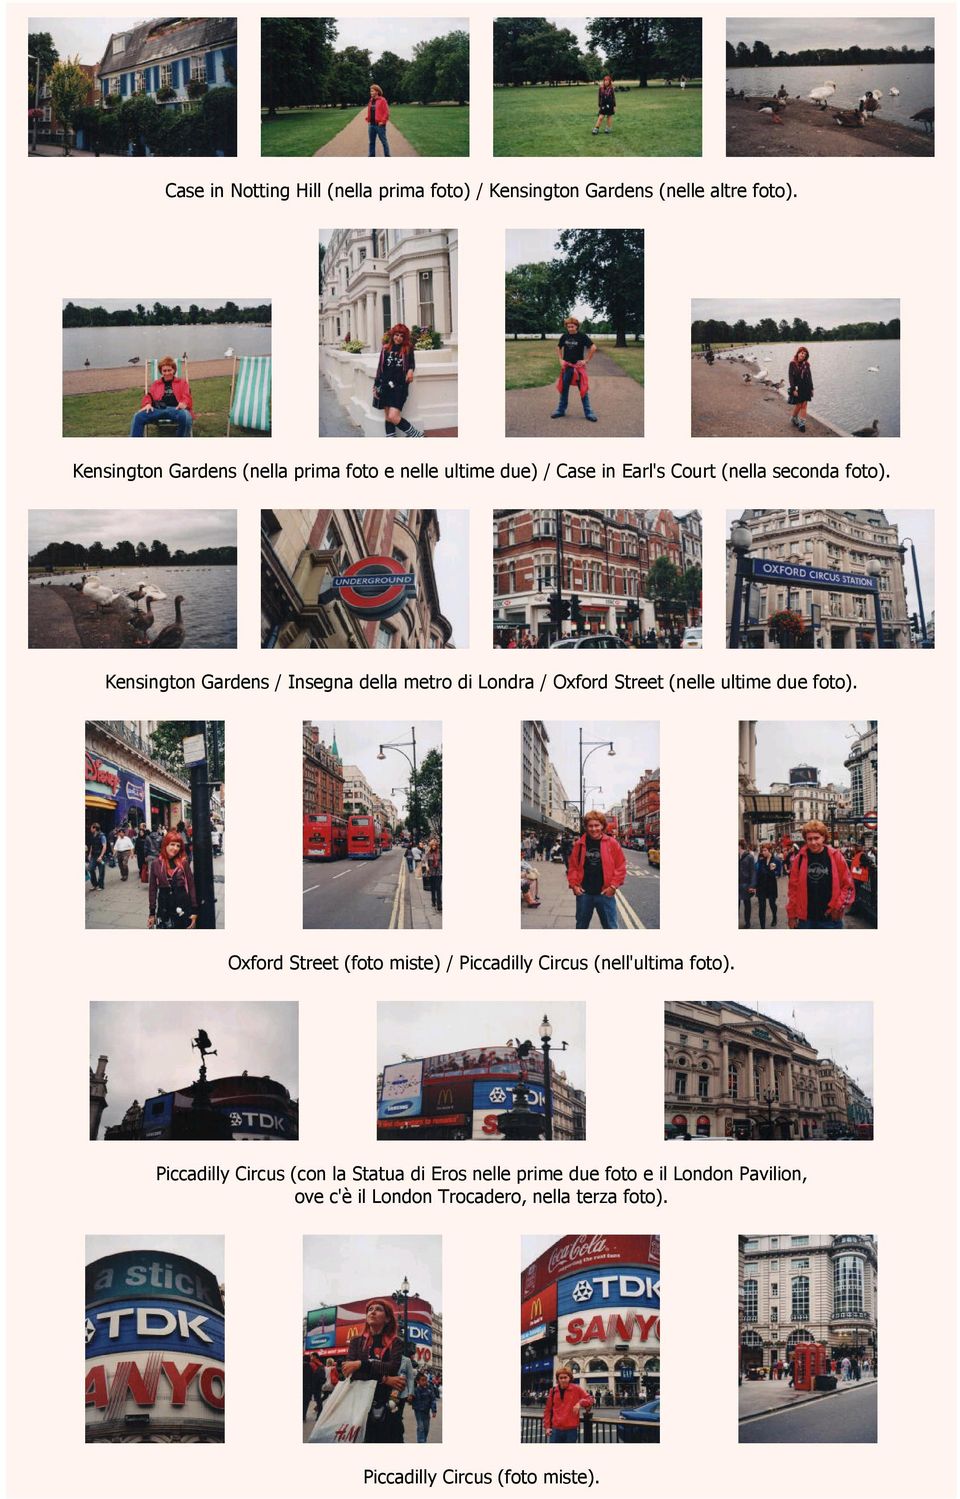 Kensington Gardens / Insegna della metro di Londra / Oxford Street (nelle ultime due foto).